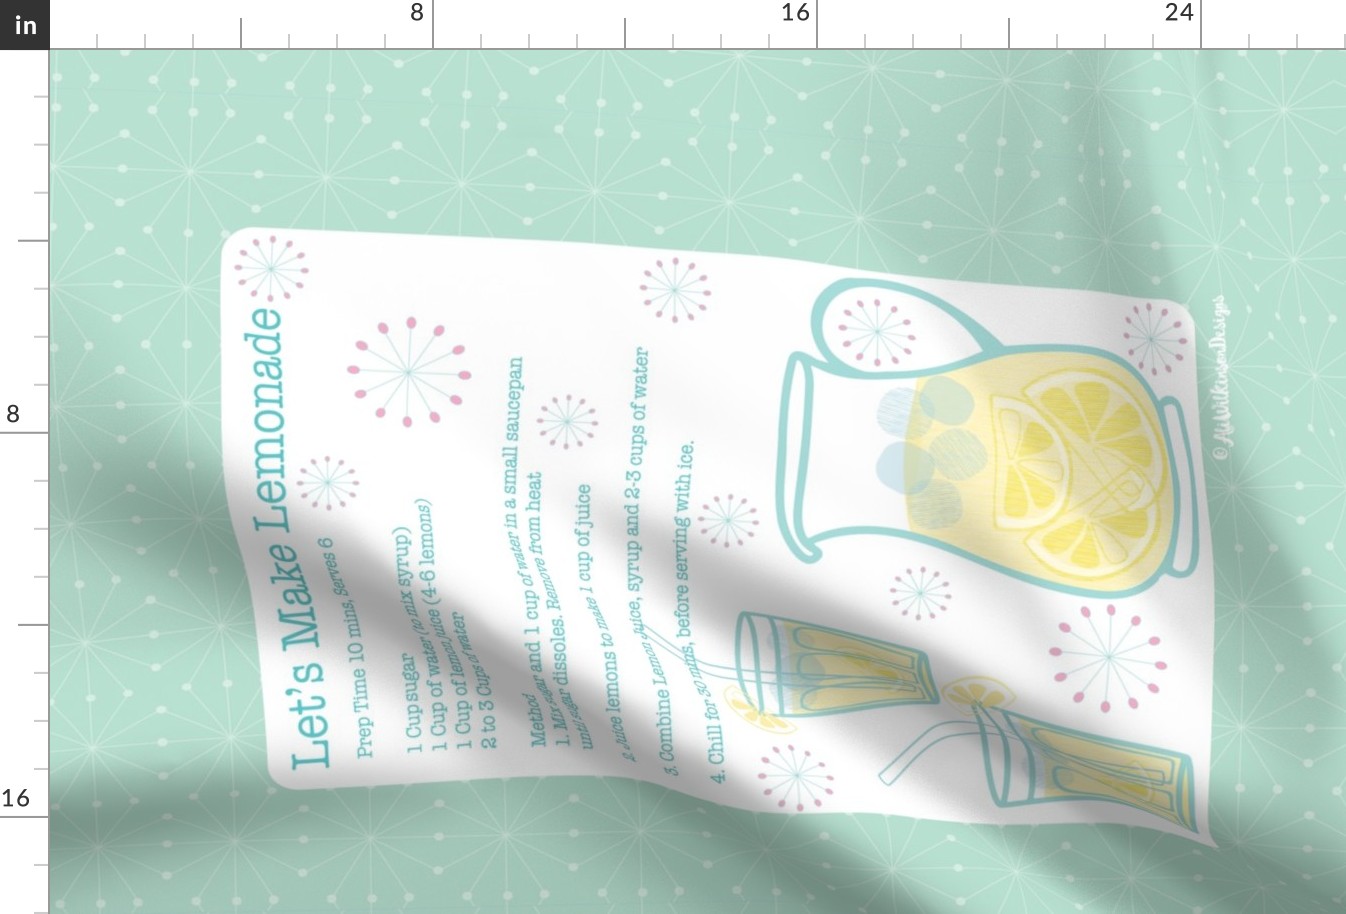 Lemonade_Recipe_Tea_Towel_-_Mint-New